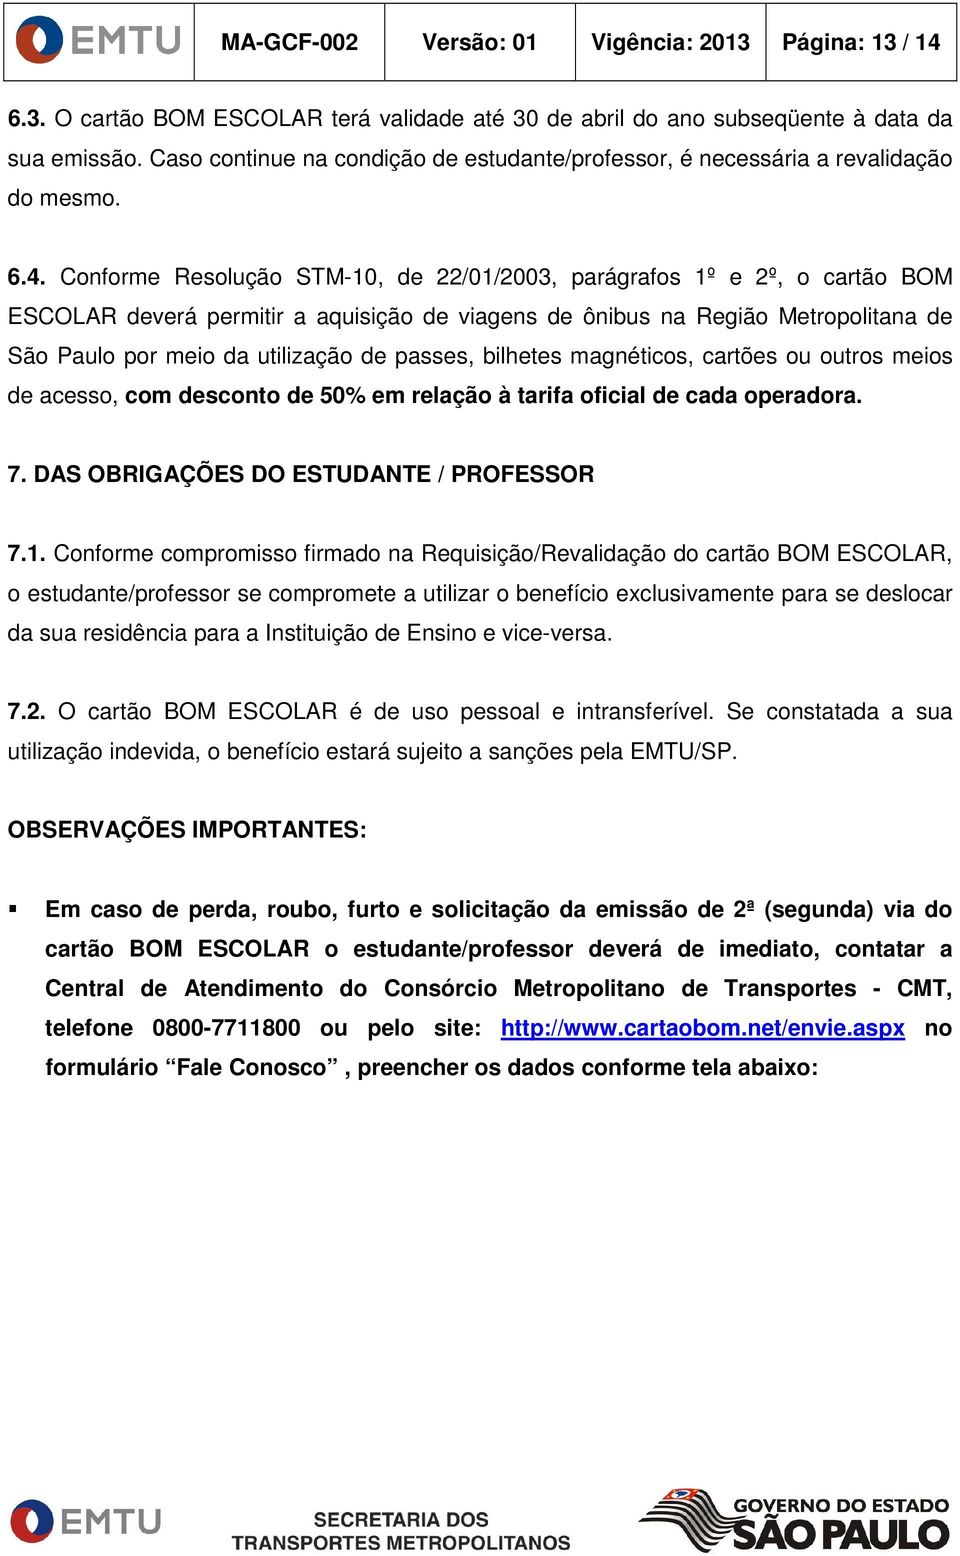 Conforme Resolução STM-10, de 22/01/2003, parágrafos 1º e 2º, o cartão BOM ESCOLAR deverá permitir a aquisição de viagens de ônibus na Região Metropolitana de São Paulo por meio da utilização de